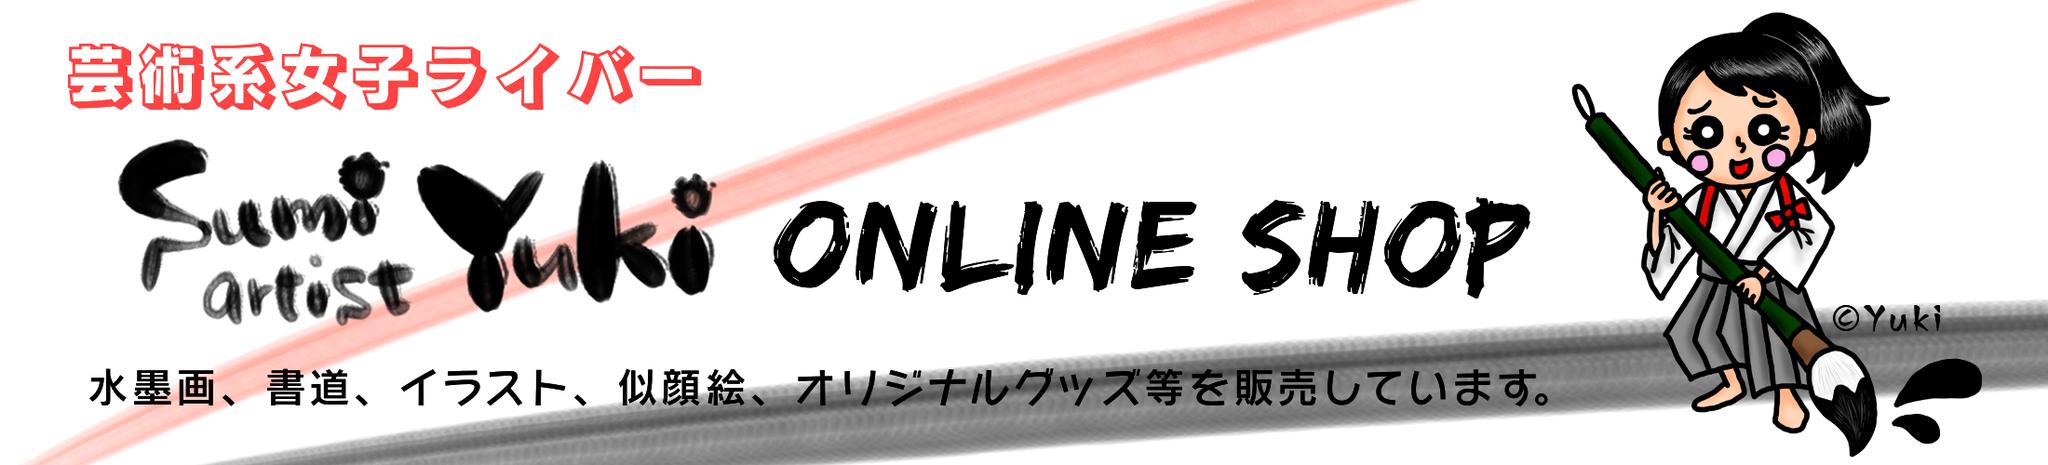 Sumi artist Yuki Online Shop